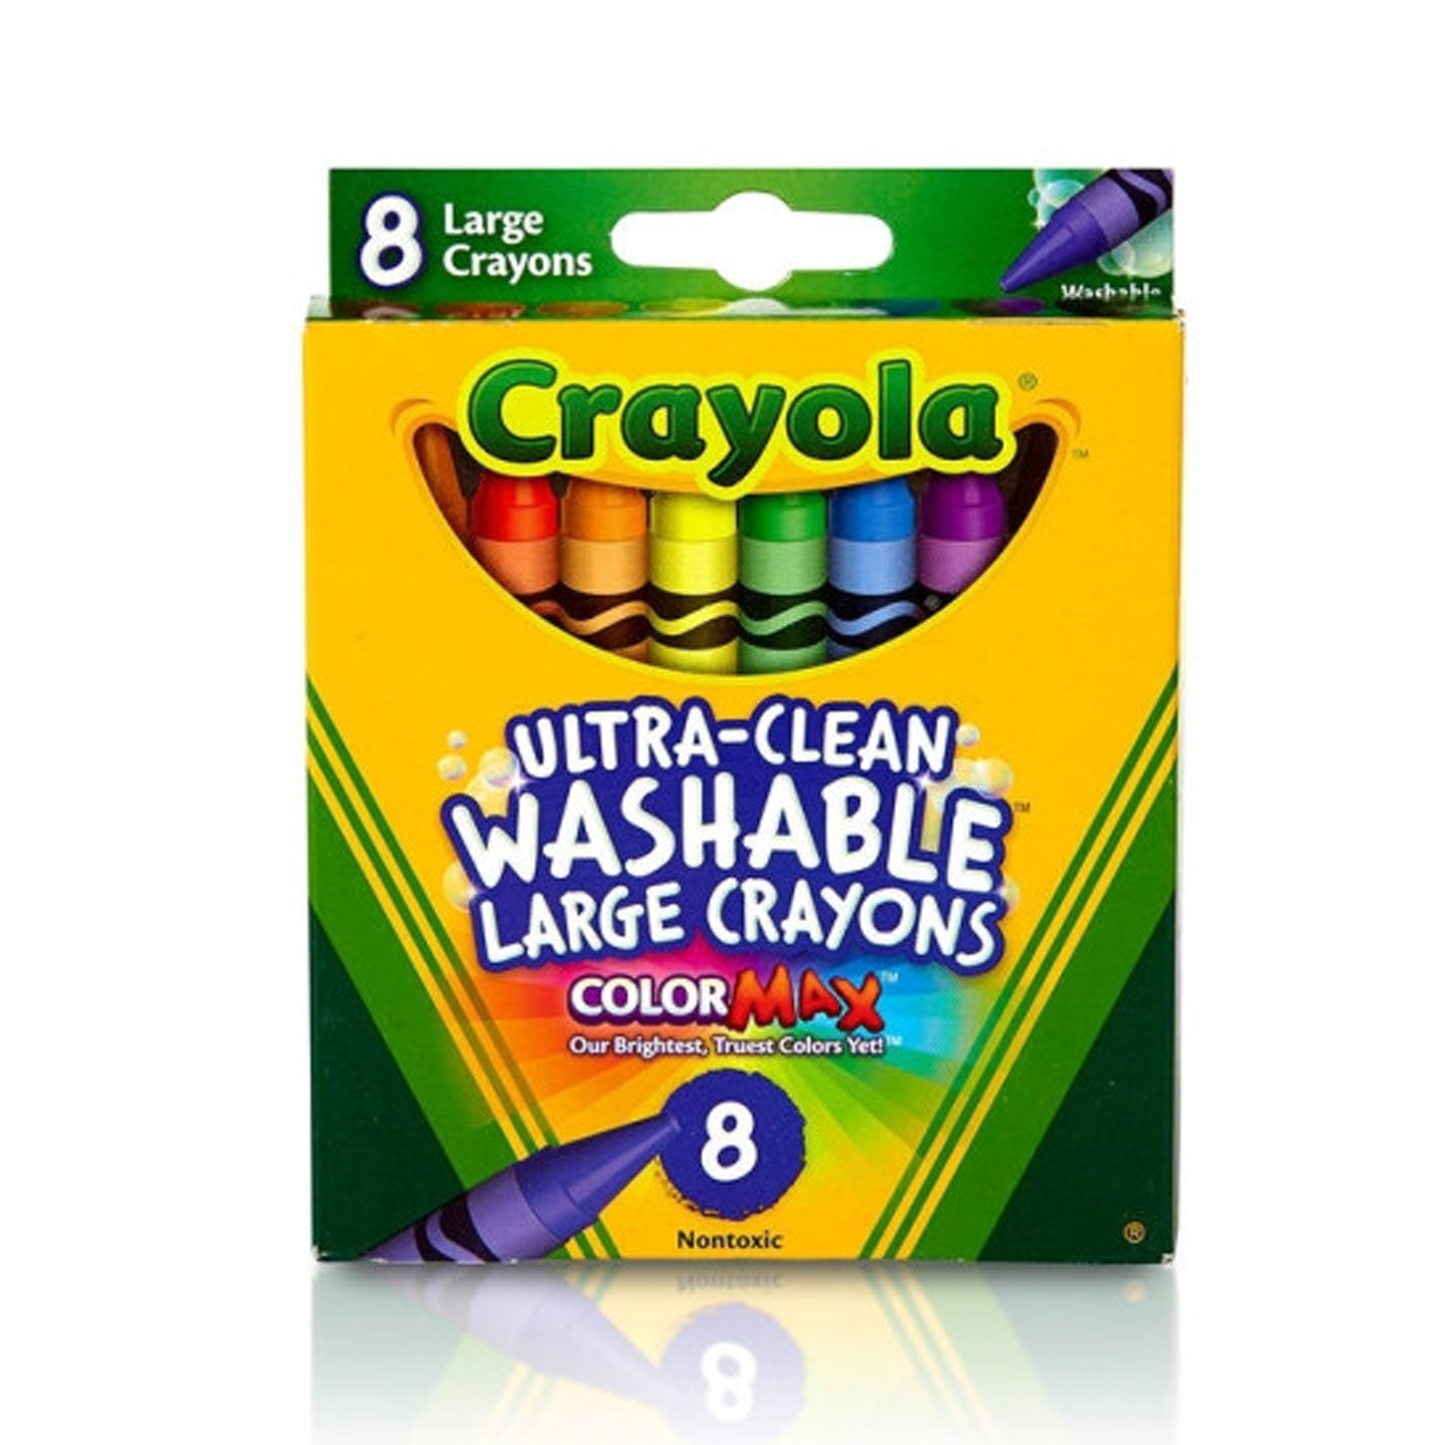 Crayola 8ct Large Washable Crayons